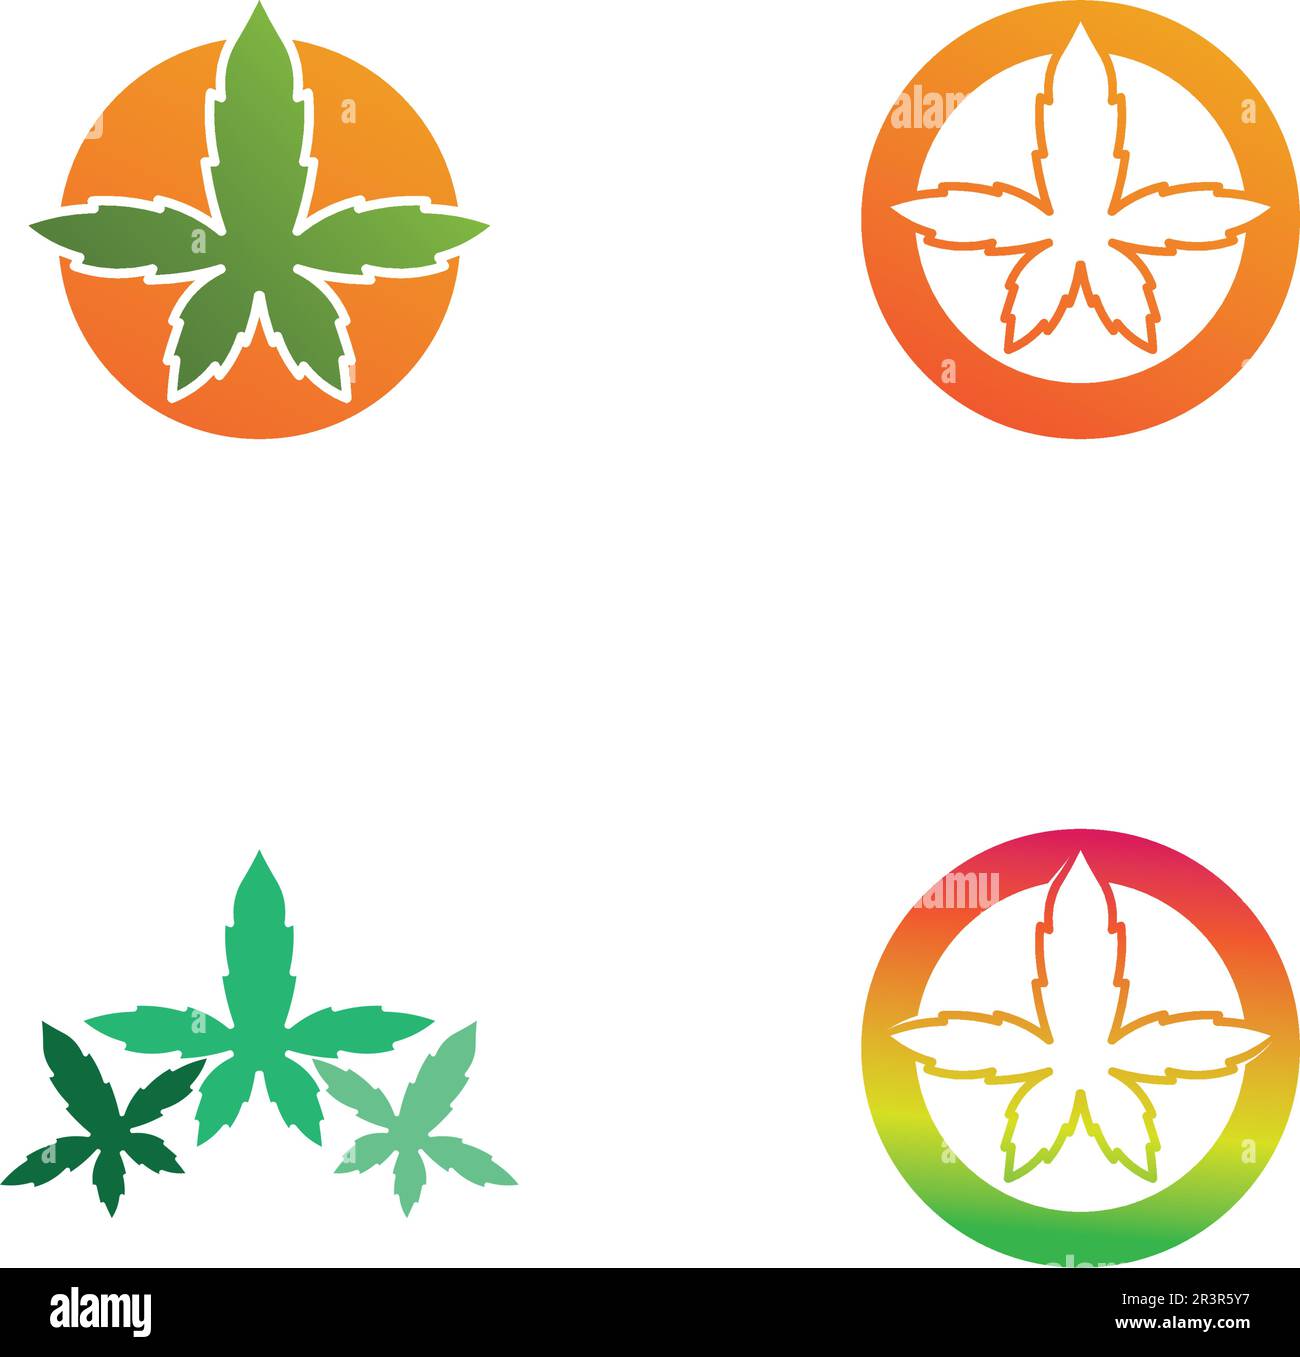 logo e disegno vettoriale della marijuana di cannabis Illustrazione Vettoriale